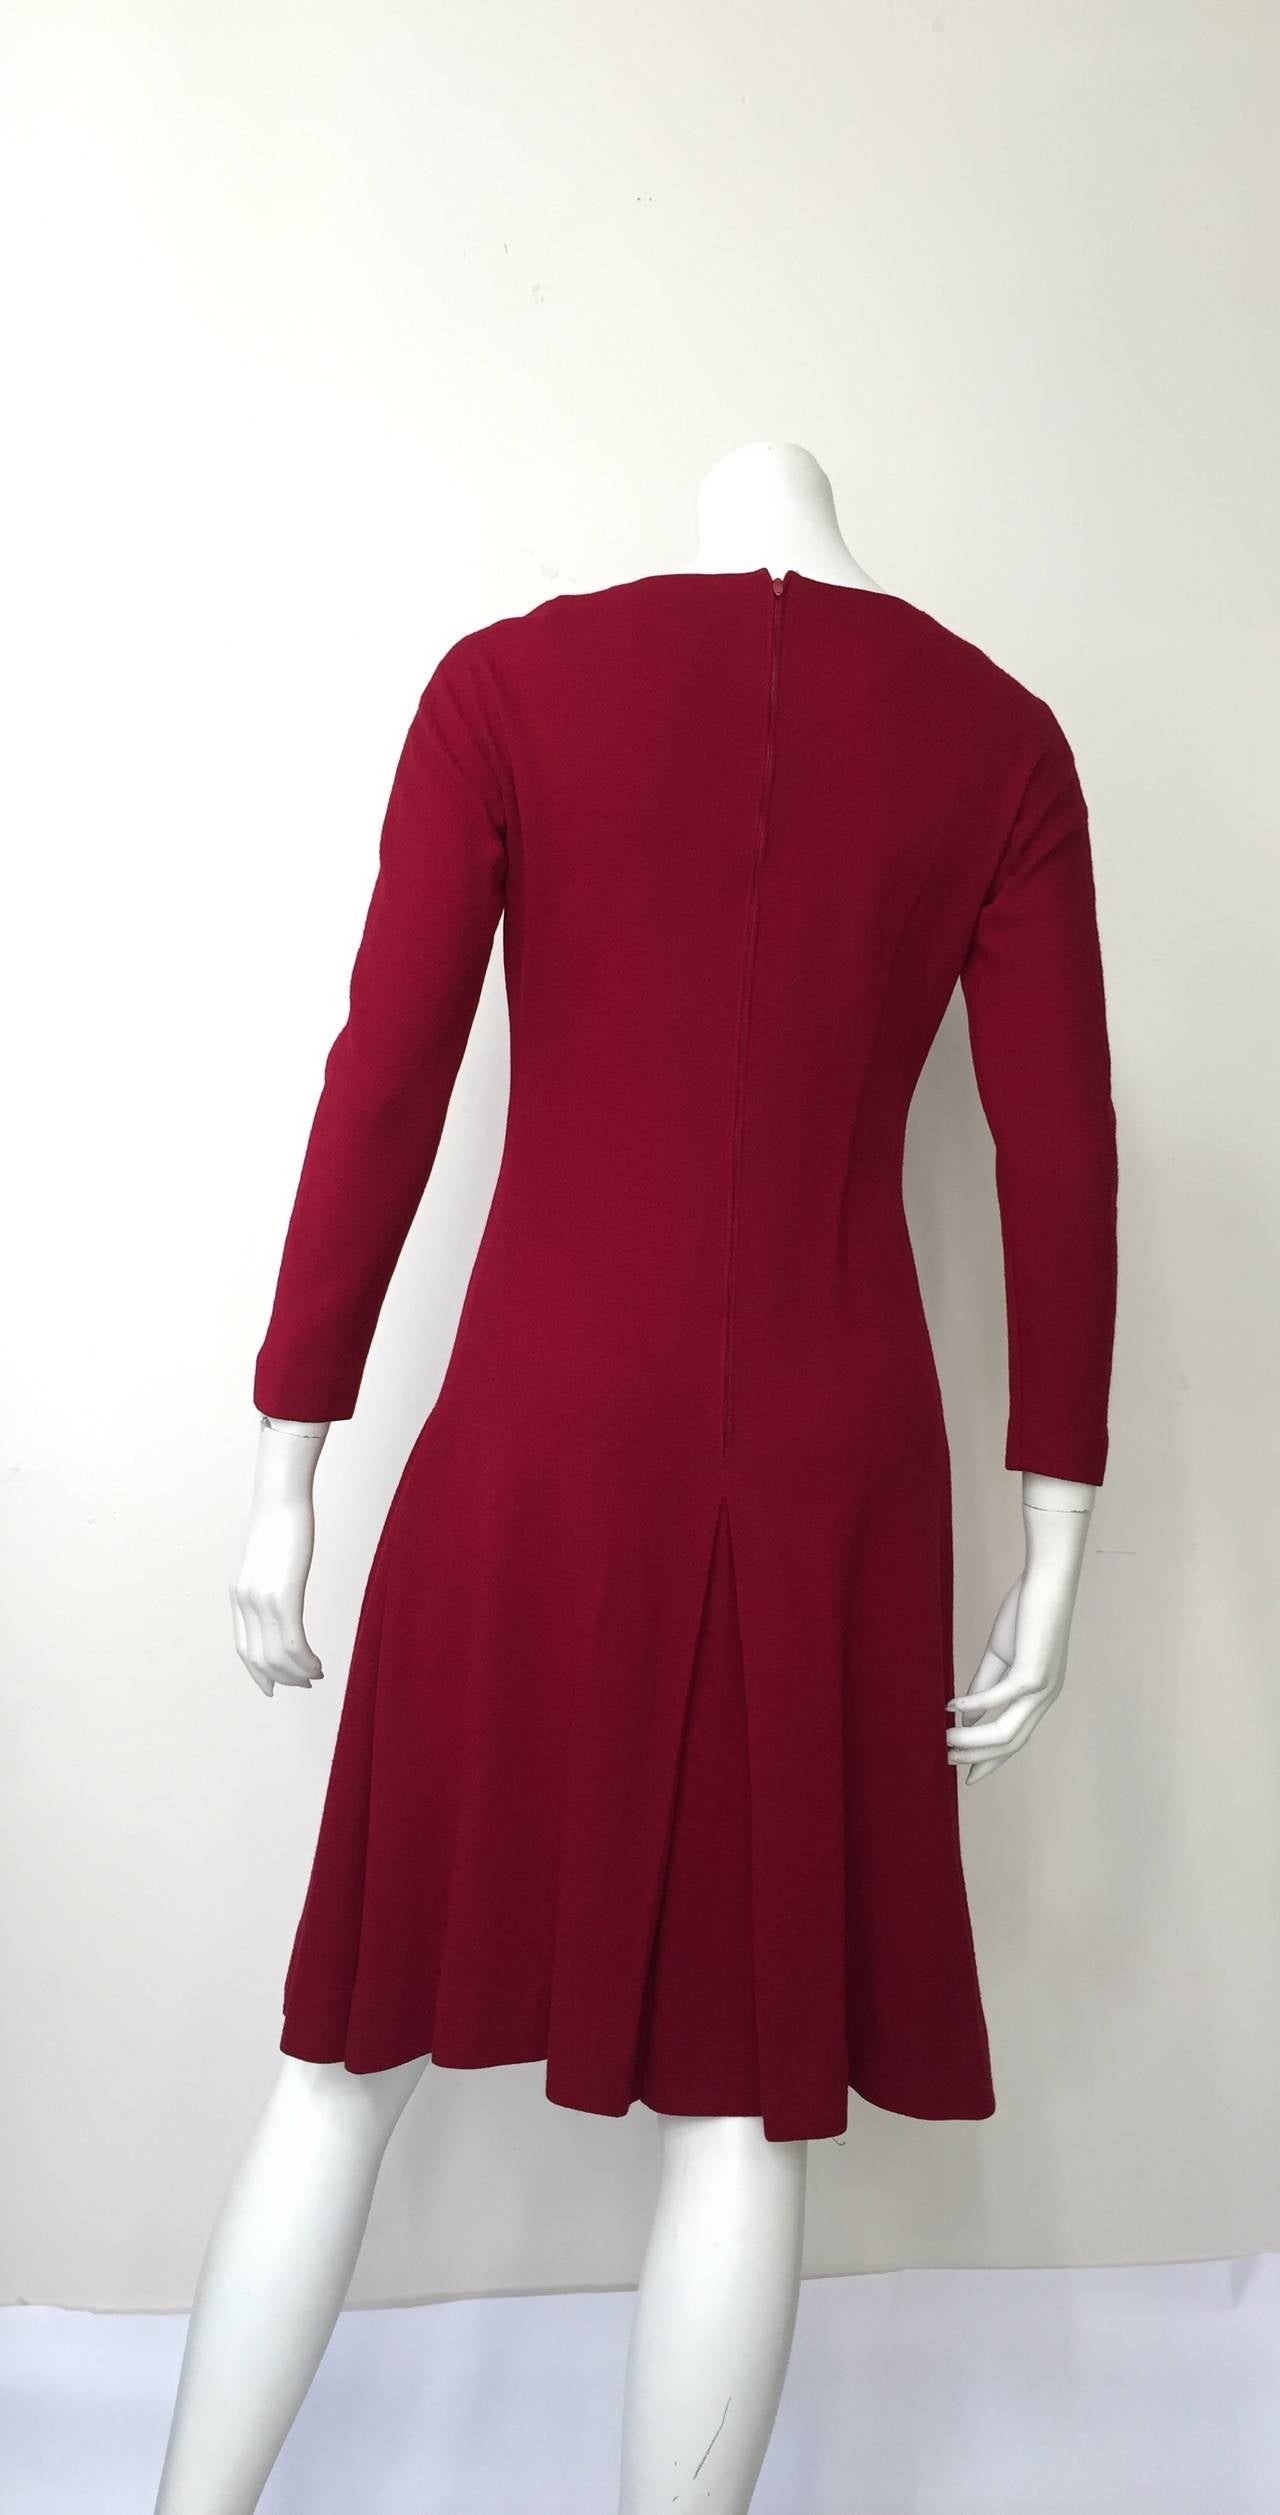 Anne Fogarty 1960s Wool Dress Size 6. 1